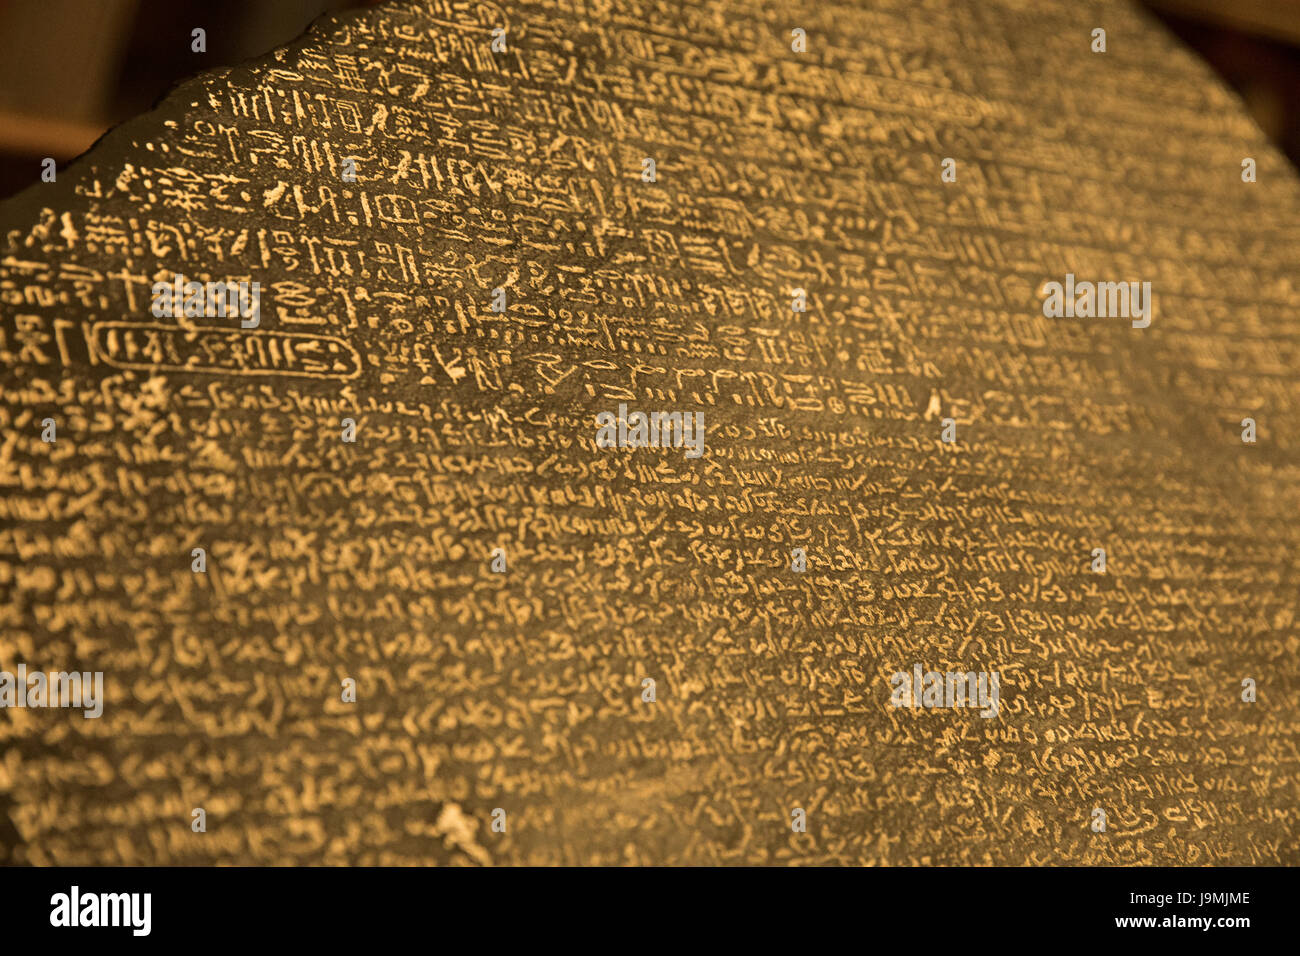 Geroglifici egiziani, demotic script, il greco antico - Rosetta Stone, 196 BC, il British Museum di Londra, Inghilterra, Regno Unito Foto Stock